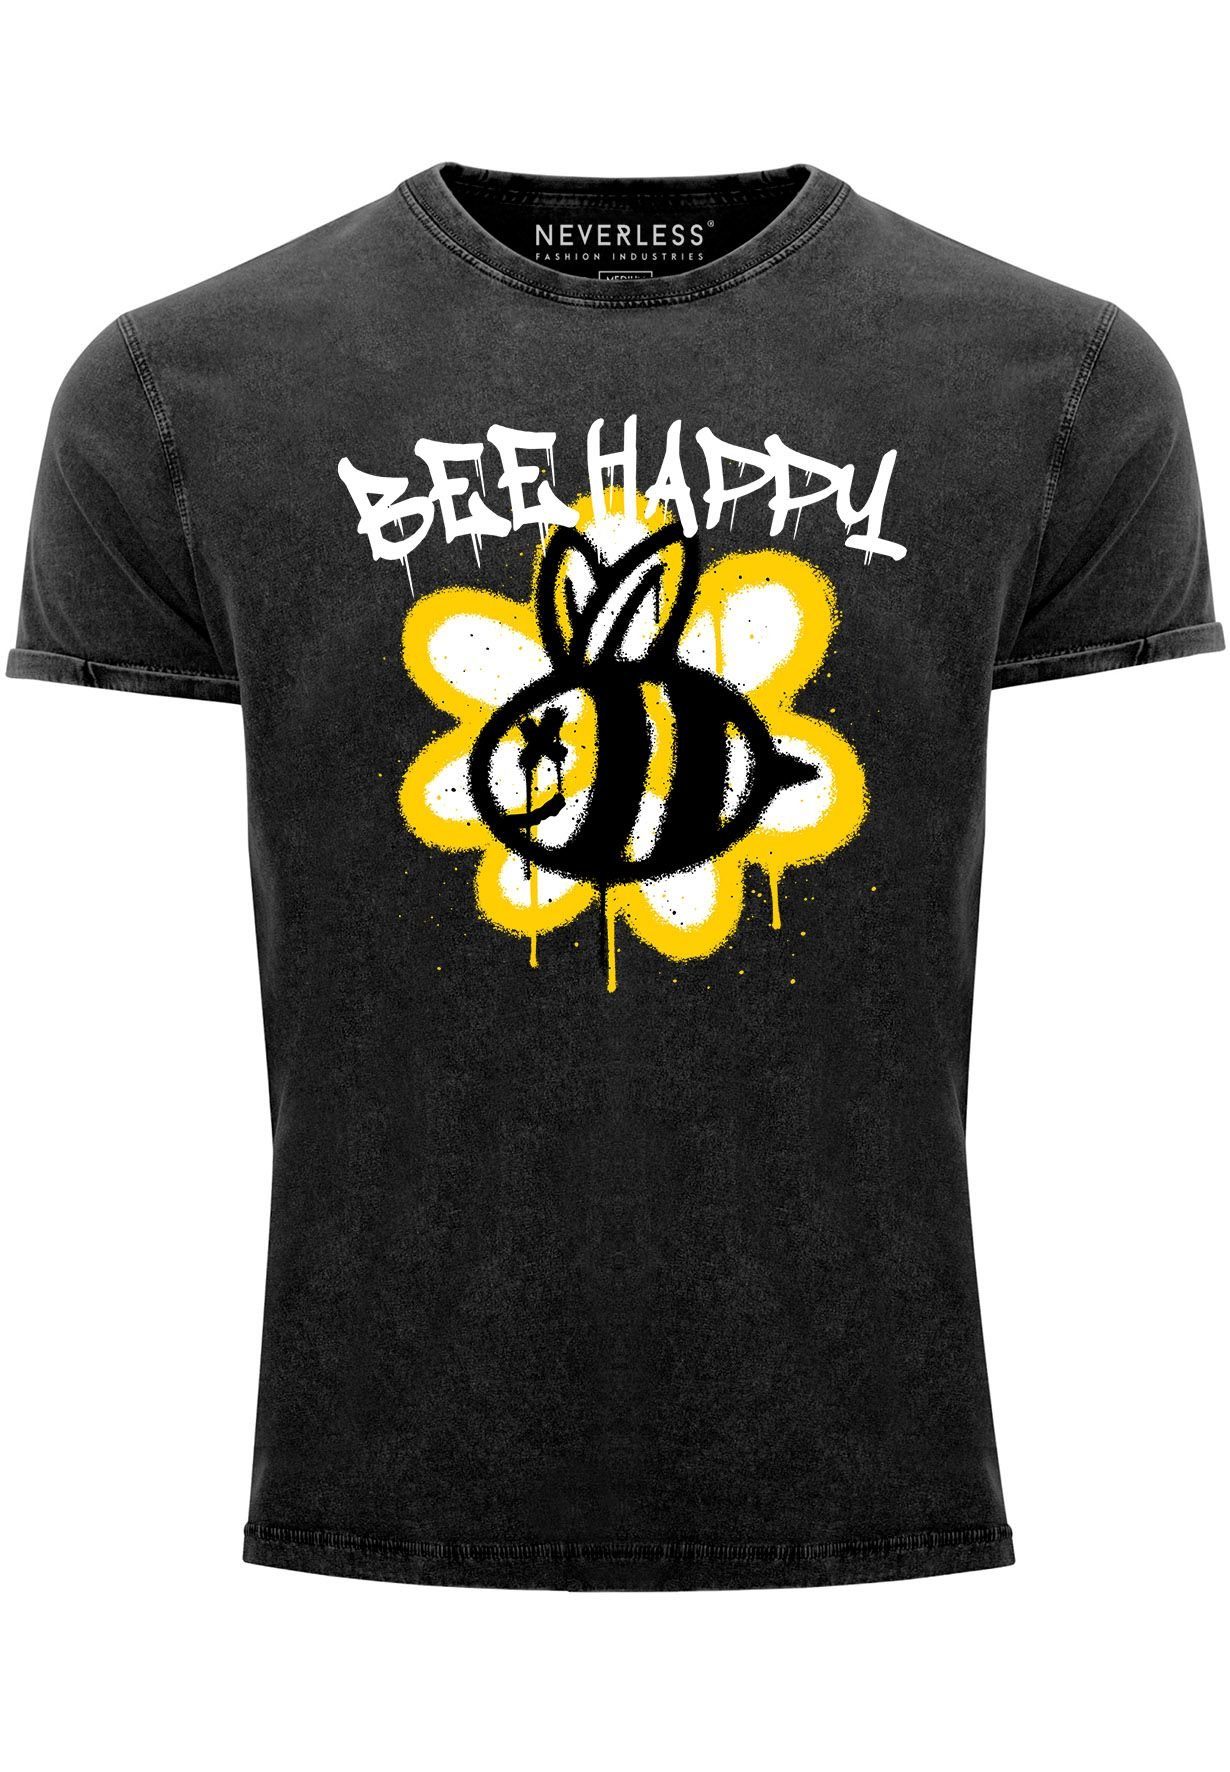 Neverless Print-Shirt Herren Vintage-Shirt Aufdruck Bee Happy Biene Blume Graffiti Schriftzu mit Print schwarz